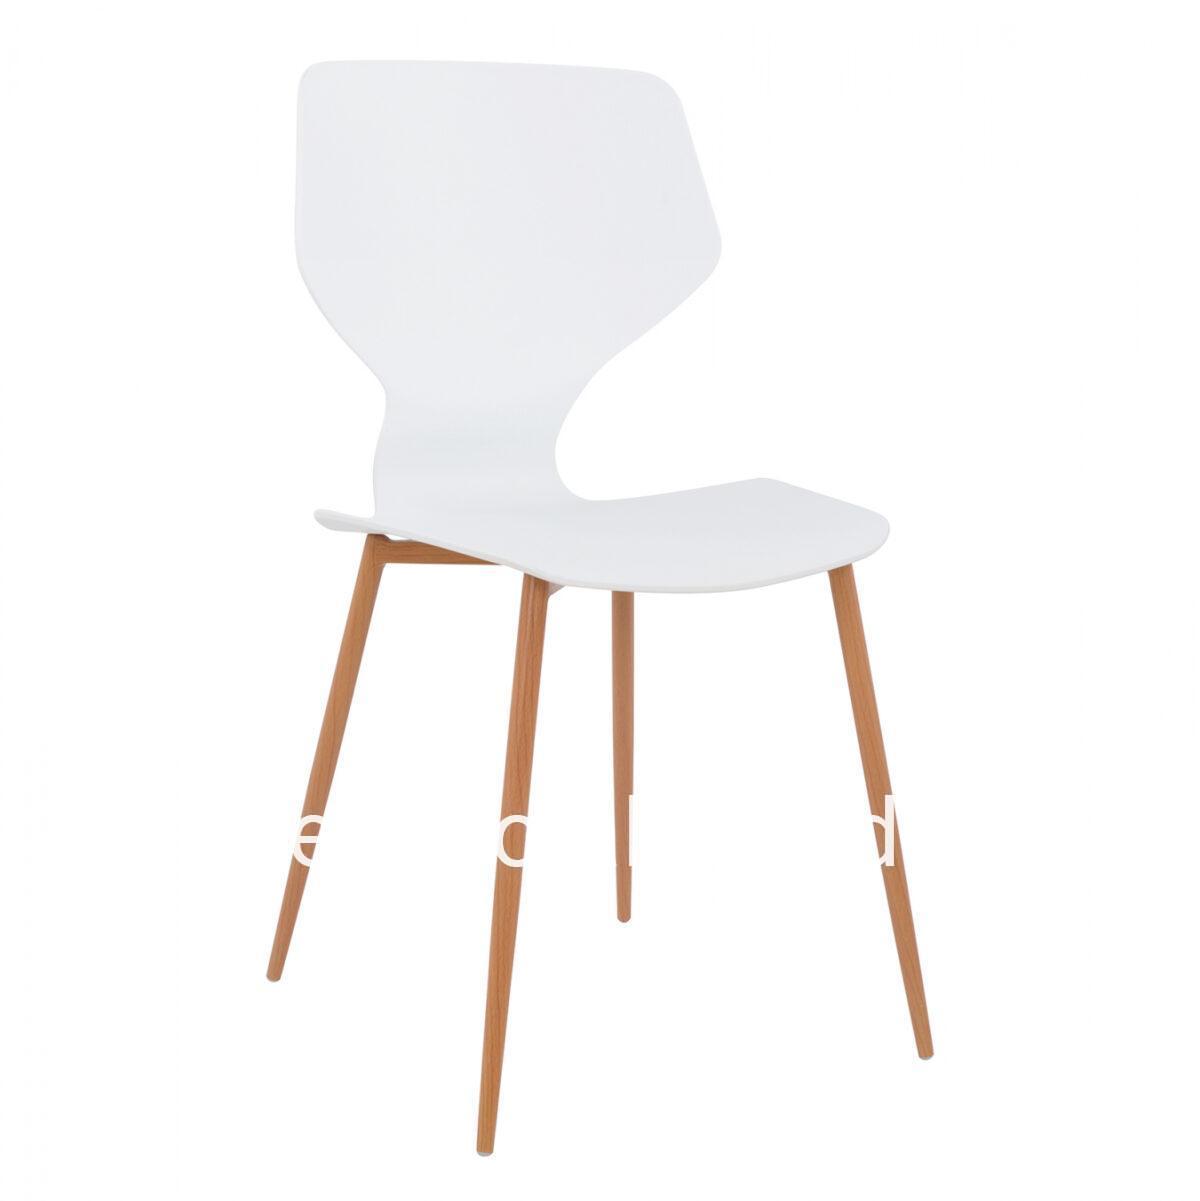 Chair Polypropylene white with metallic legs Arete HM8002.01 47x45